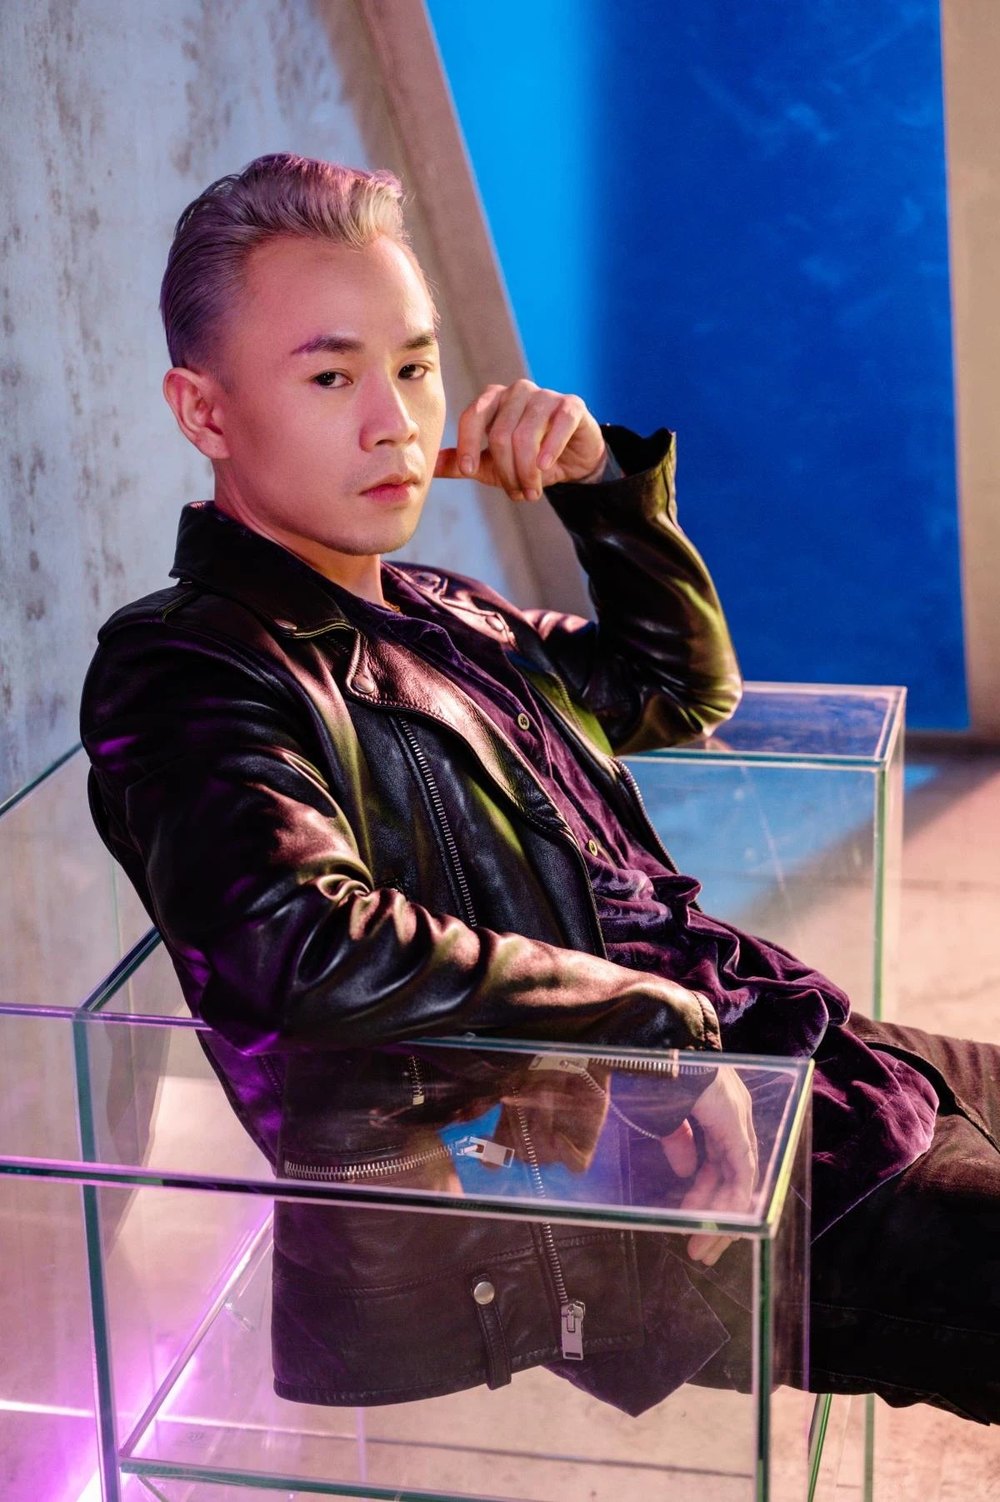  
Binz là một trong những rapper hàng đầu tại Việt Nam hiện nay. 